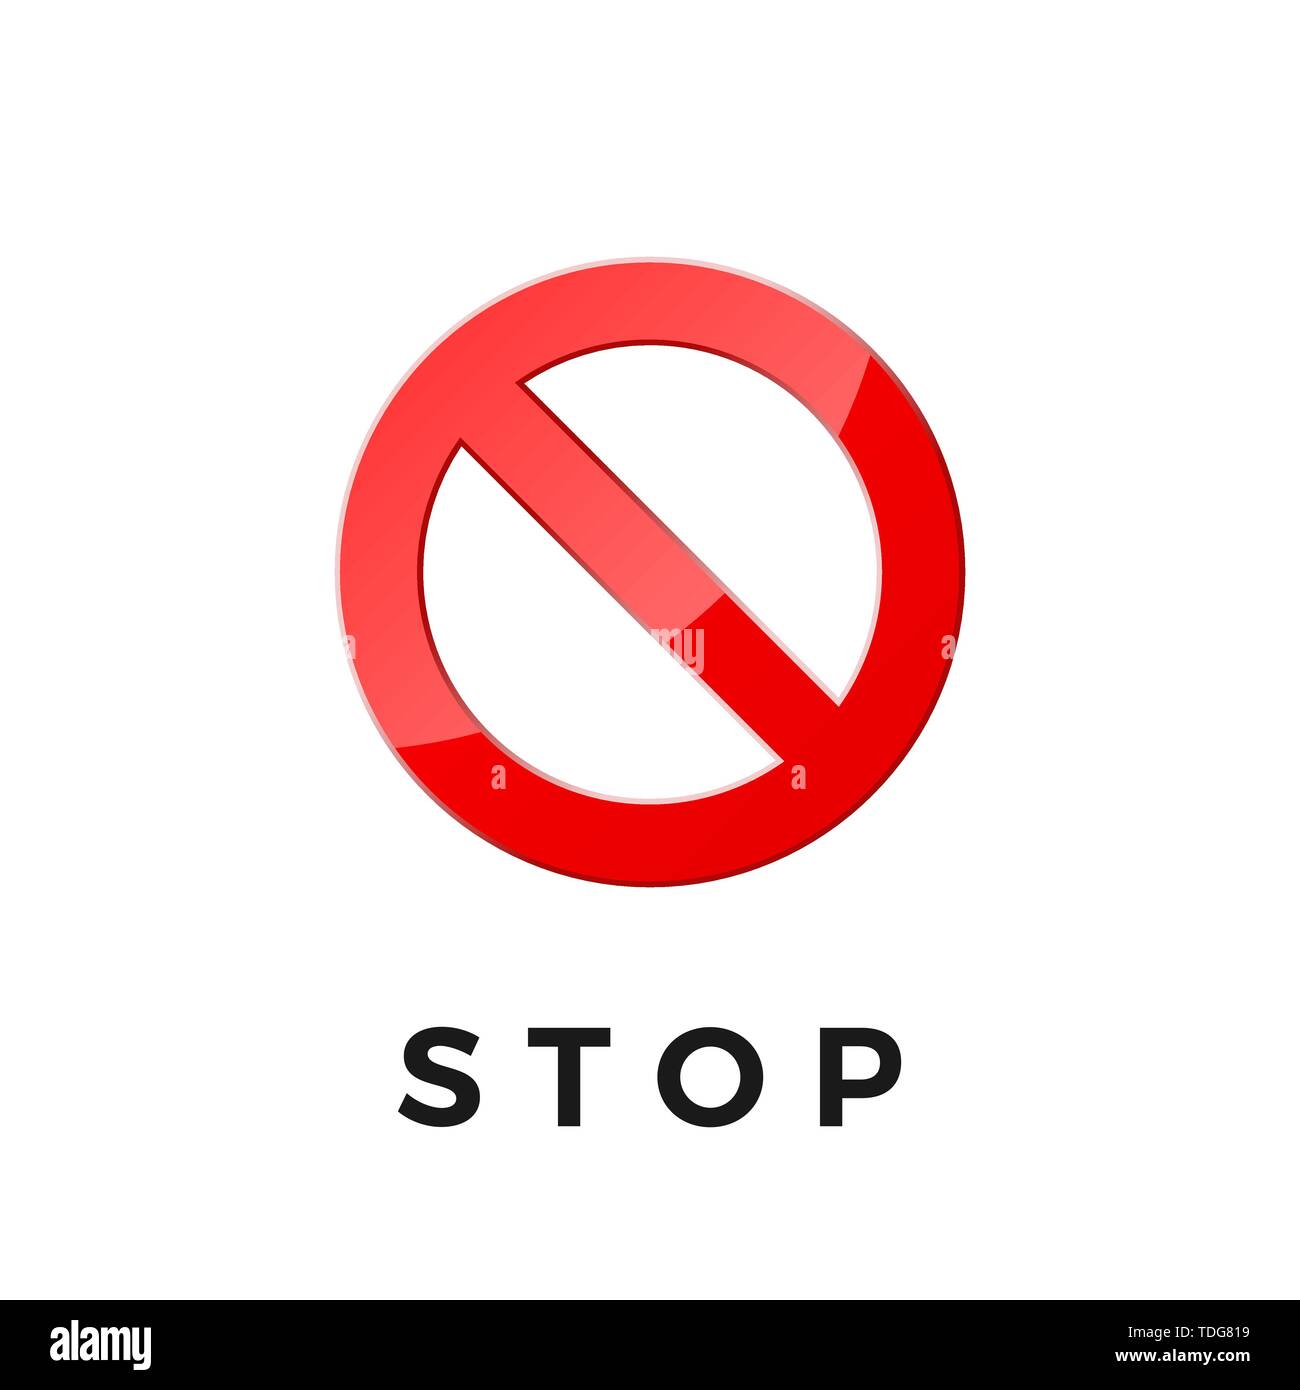 Das Symbol Stopp für Web- und App. Verbot Aufkleber Piktogramm. Rot durchgestrichenen Kreis. Vector Illustration auf weißem Hintergrund Stock Vektor